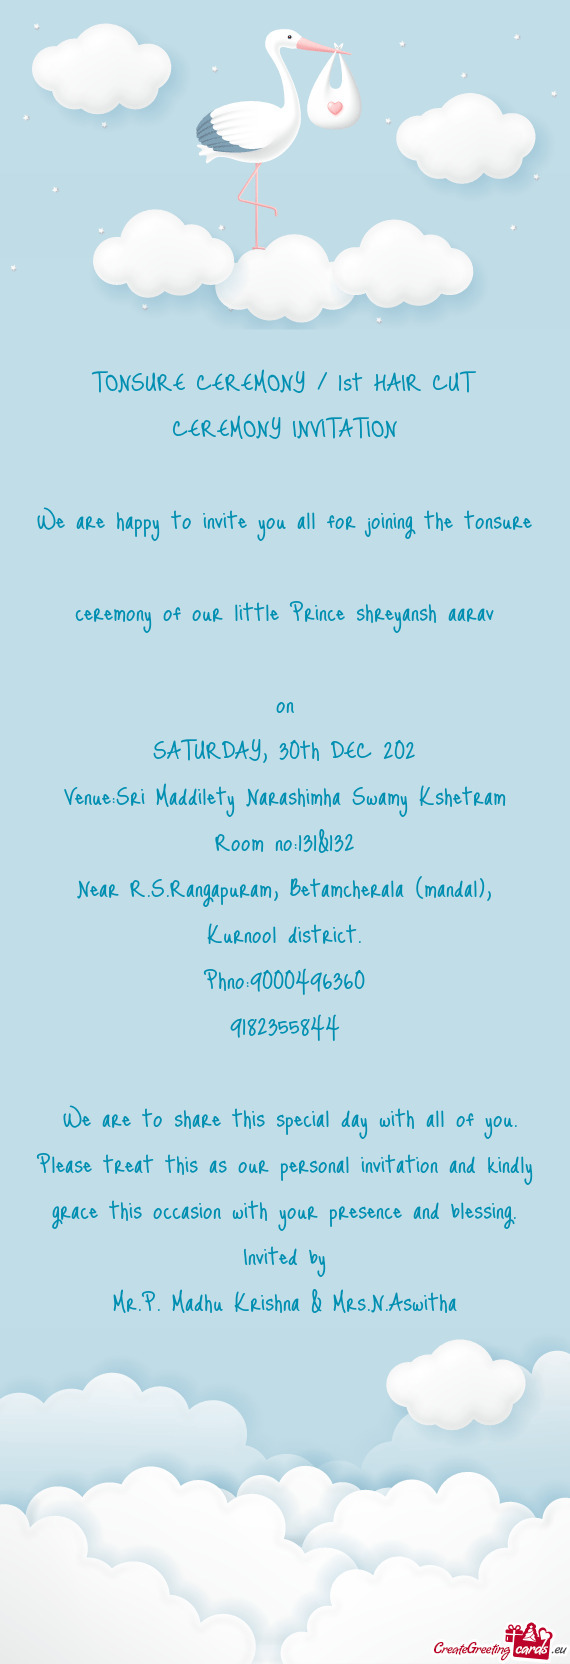 Venue:Sri Maddilety Narashimha Swamy Kshetram